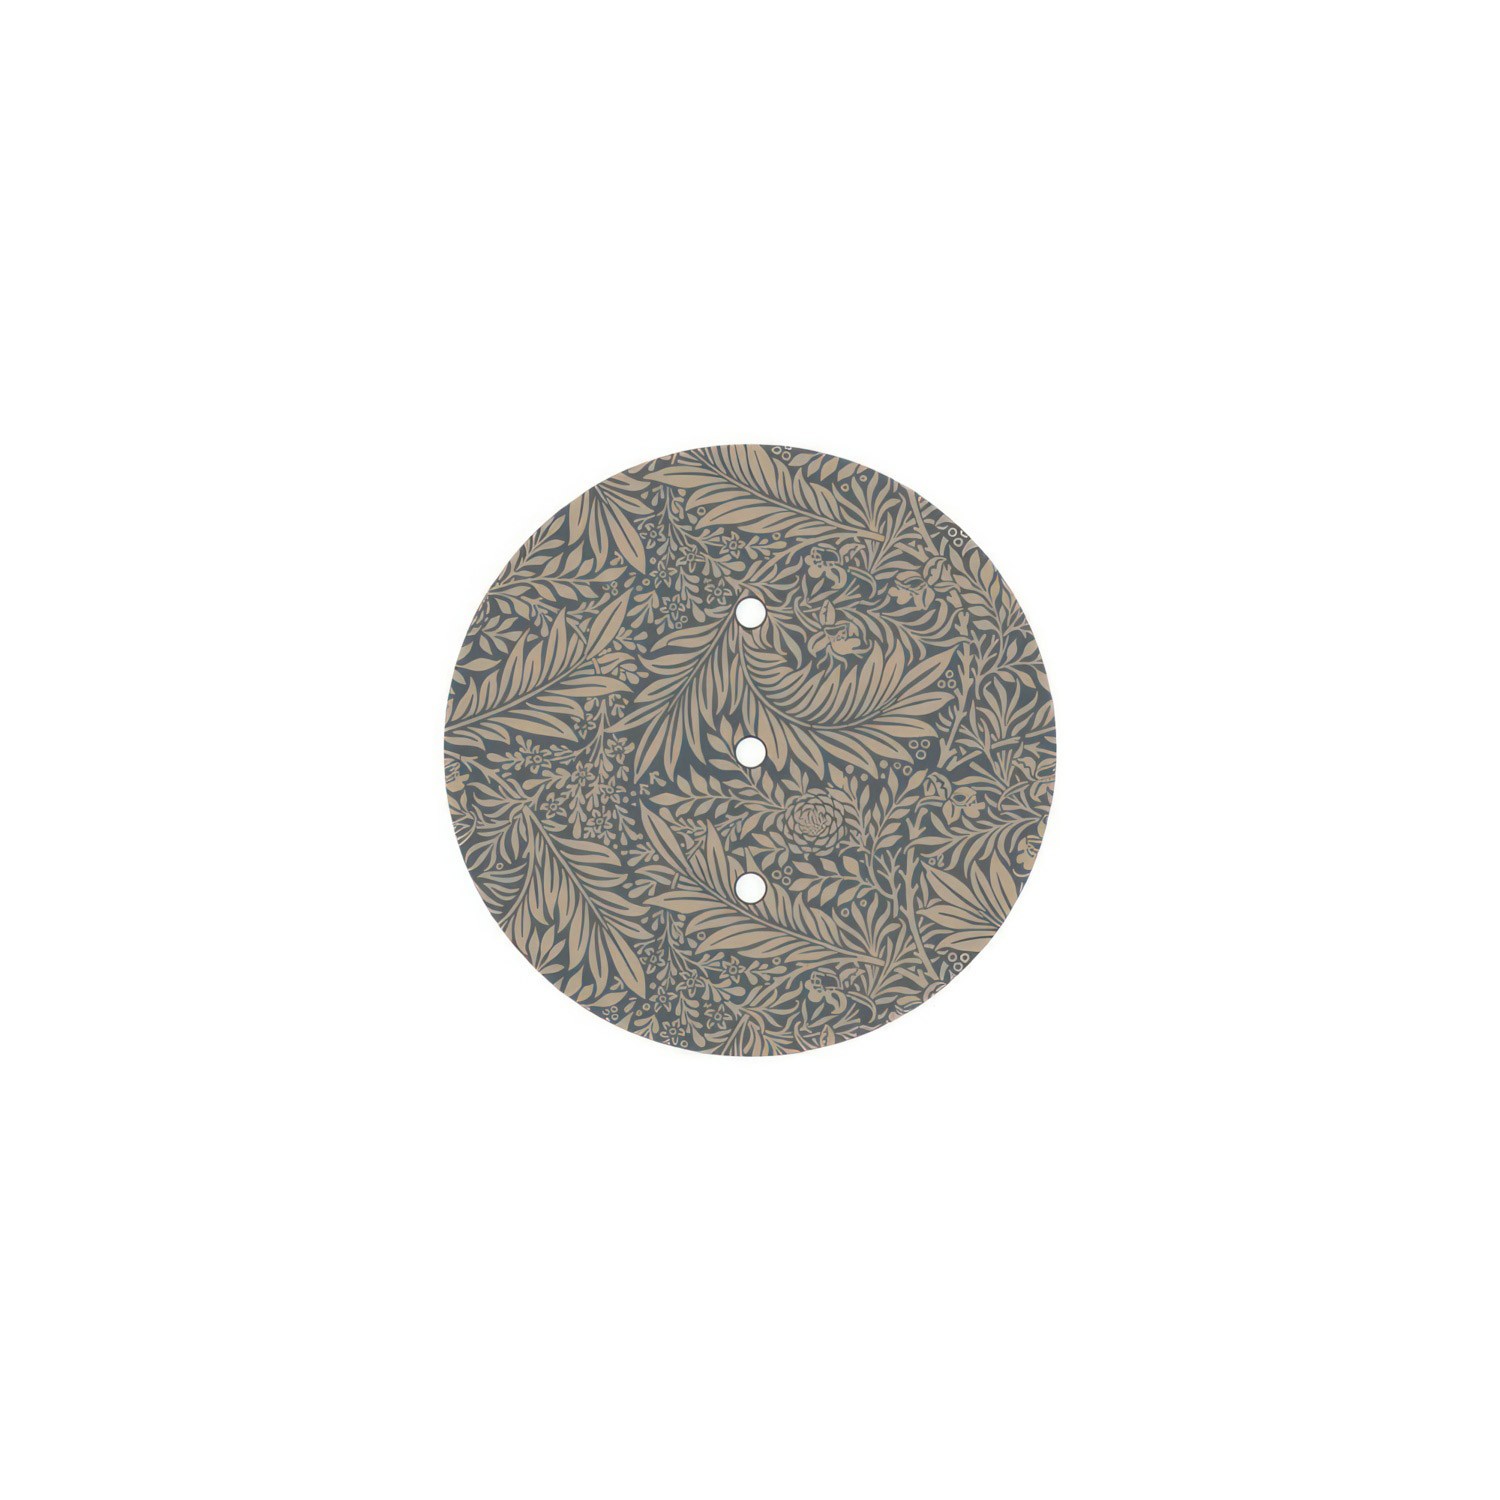 Rundes 3 Inline-Löcher und 4 Seitenlöchern Lampenbaldachin, Rose-One-Abdeckung, 200 mm Durchmesser- PROMO